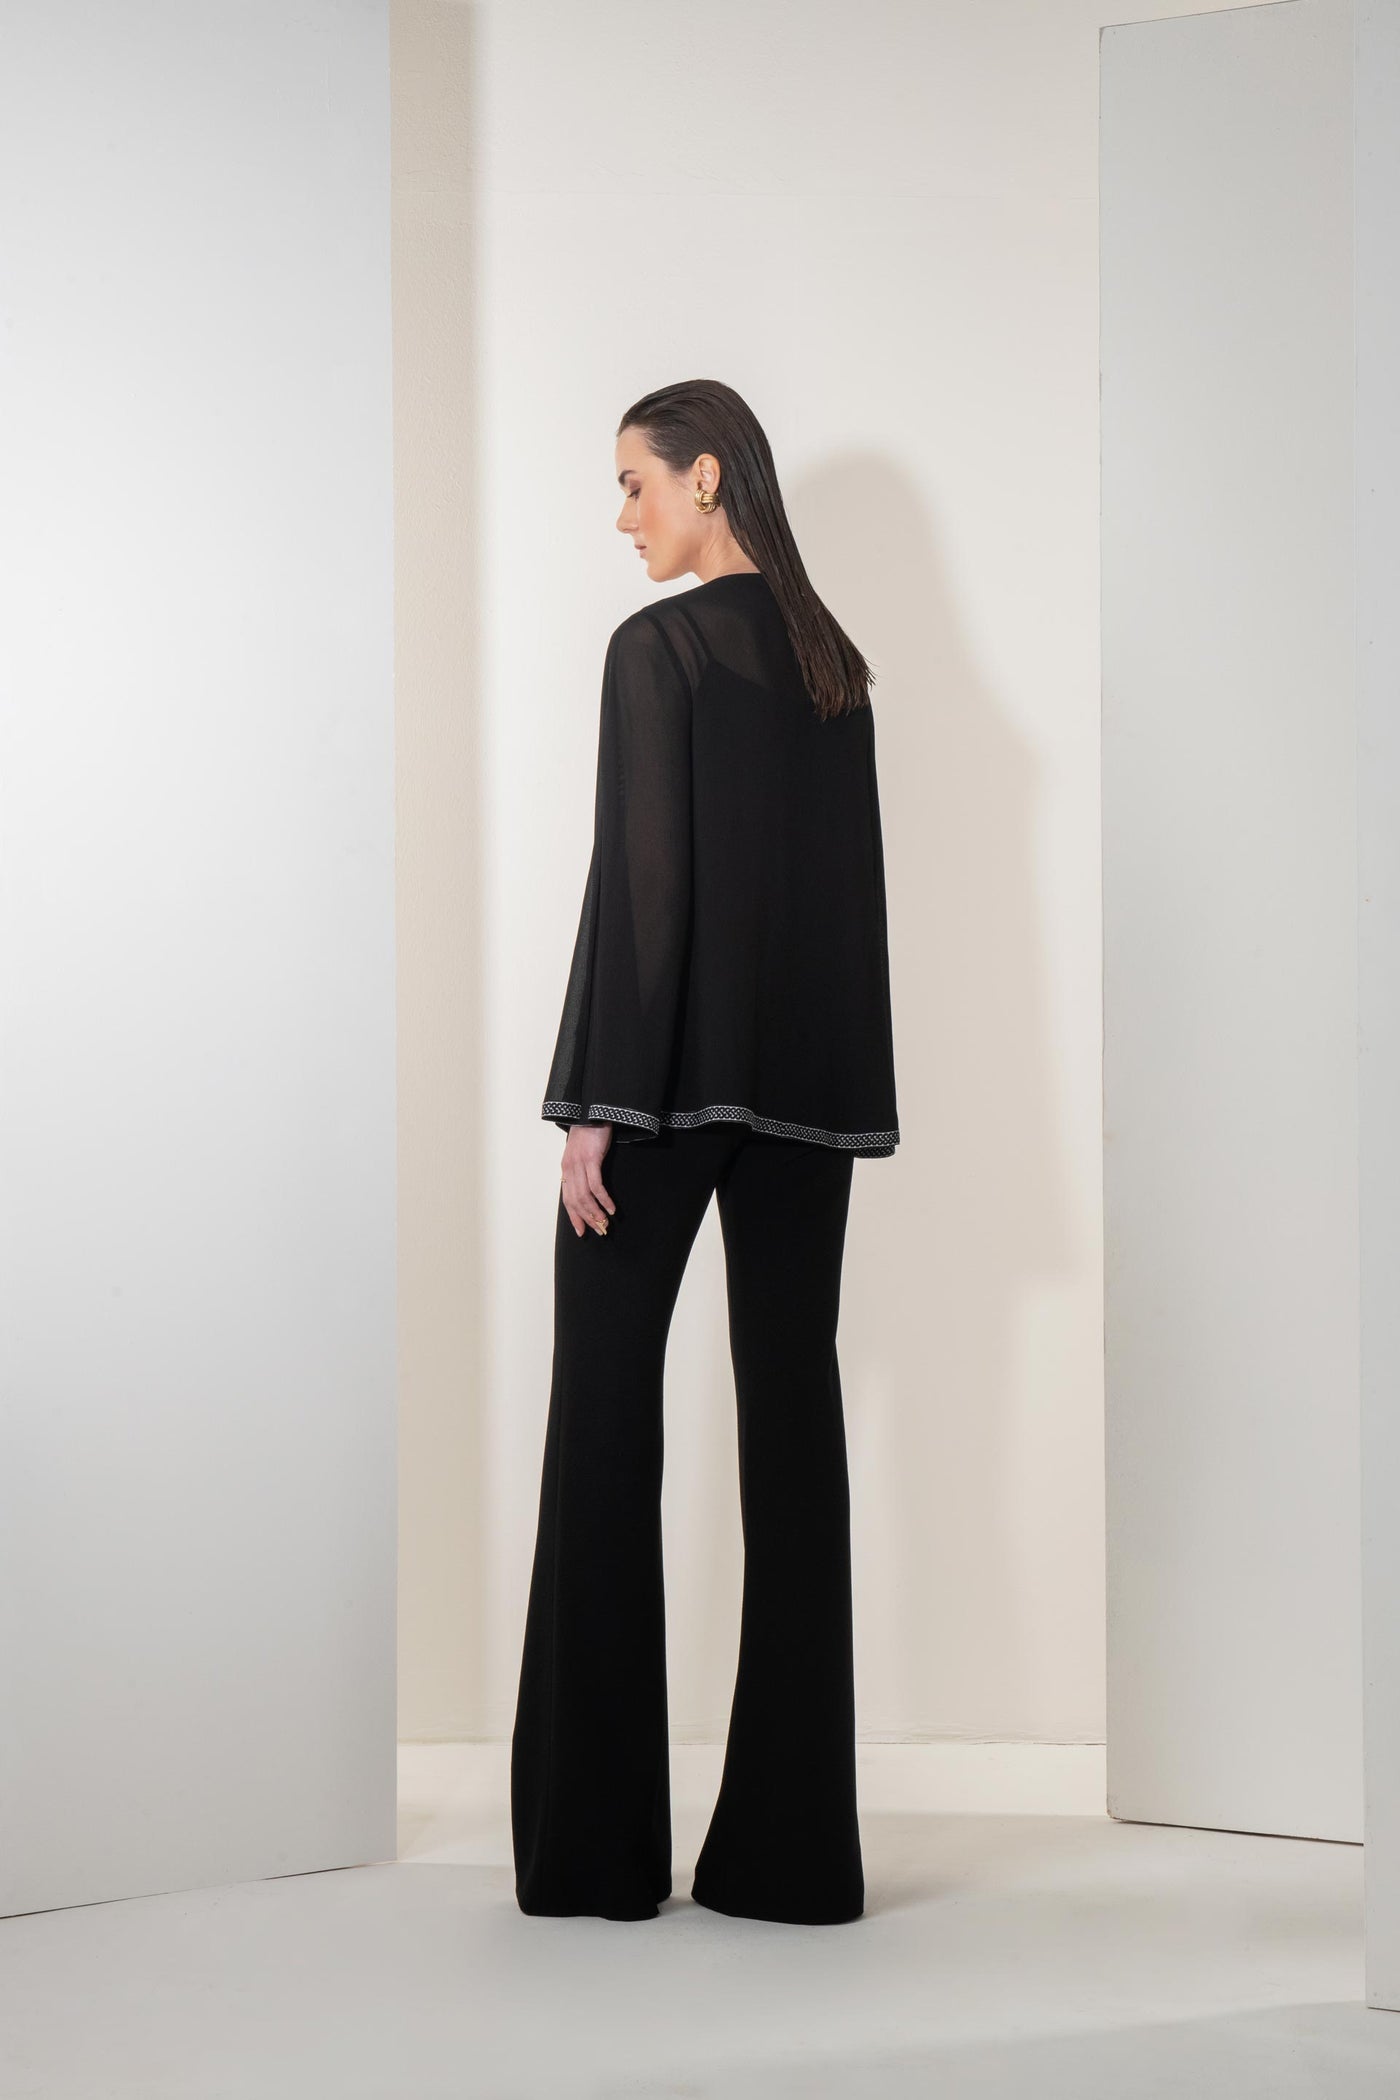 Namrata Joshipura Metallic Cord Split Sleeve Top black western indian designer wear online shopping melange singapore